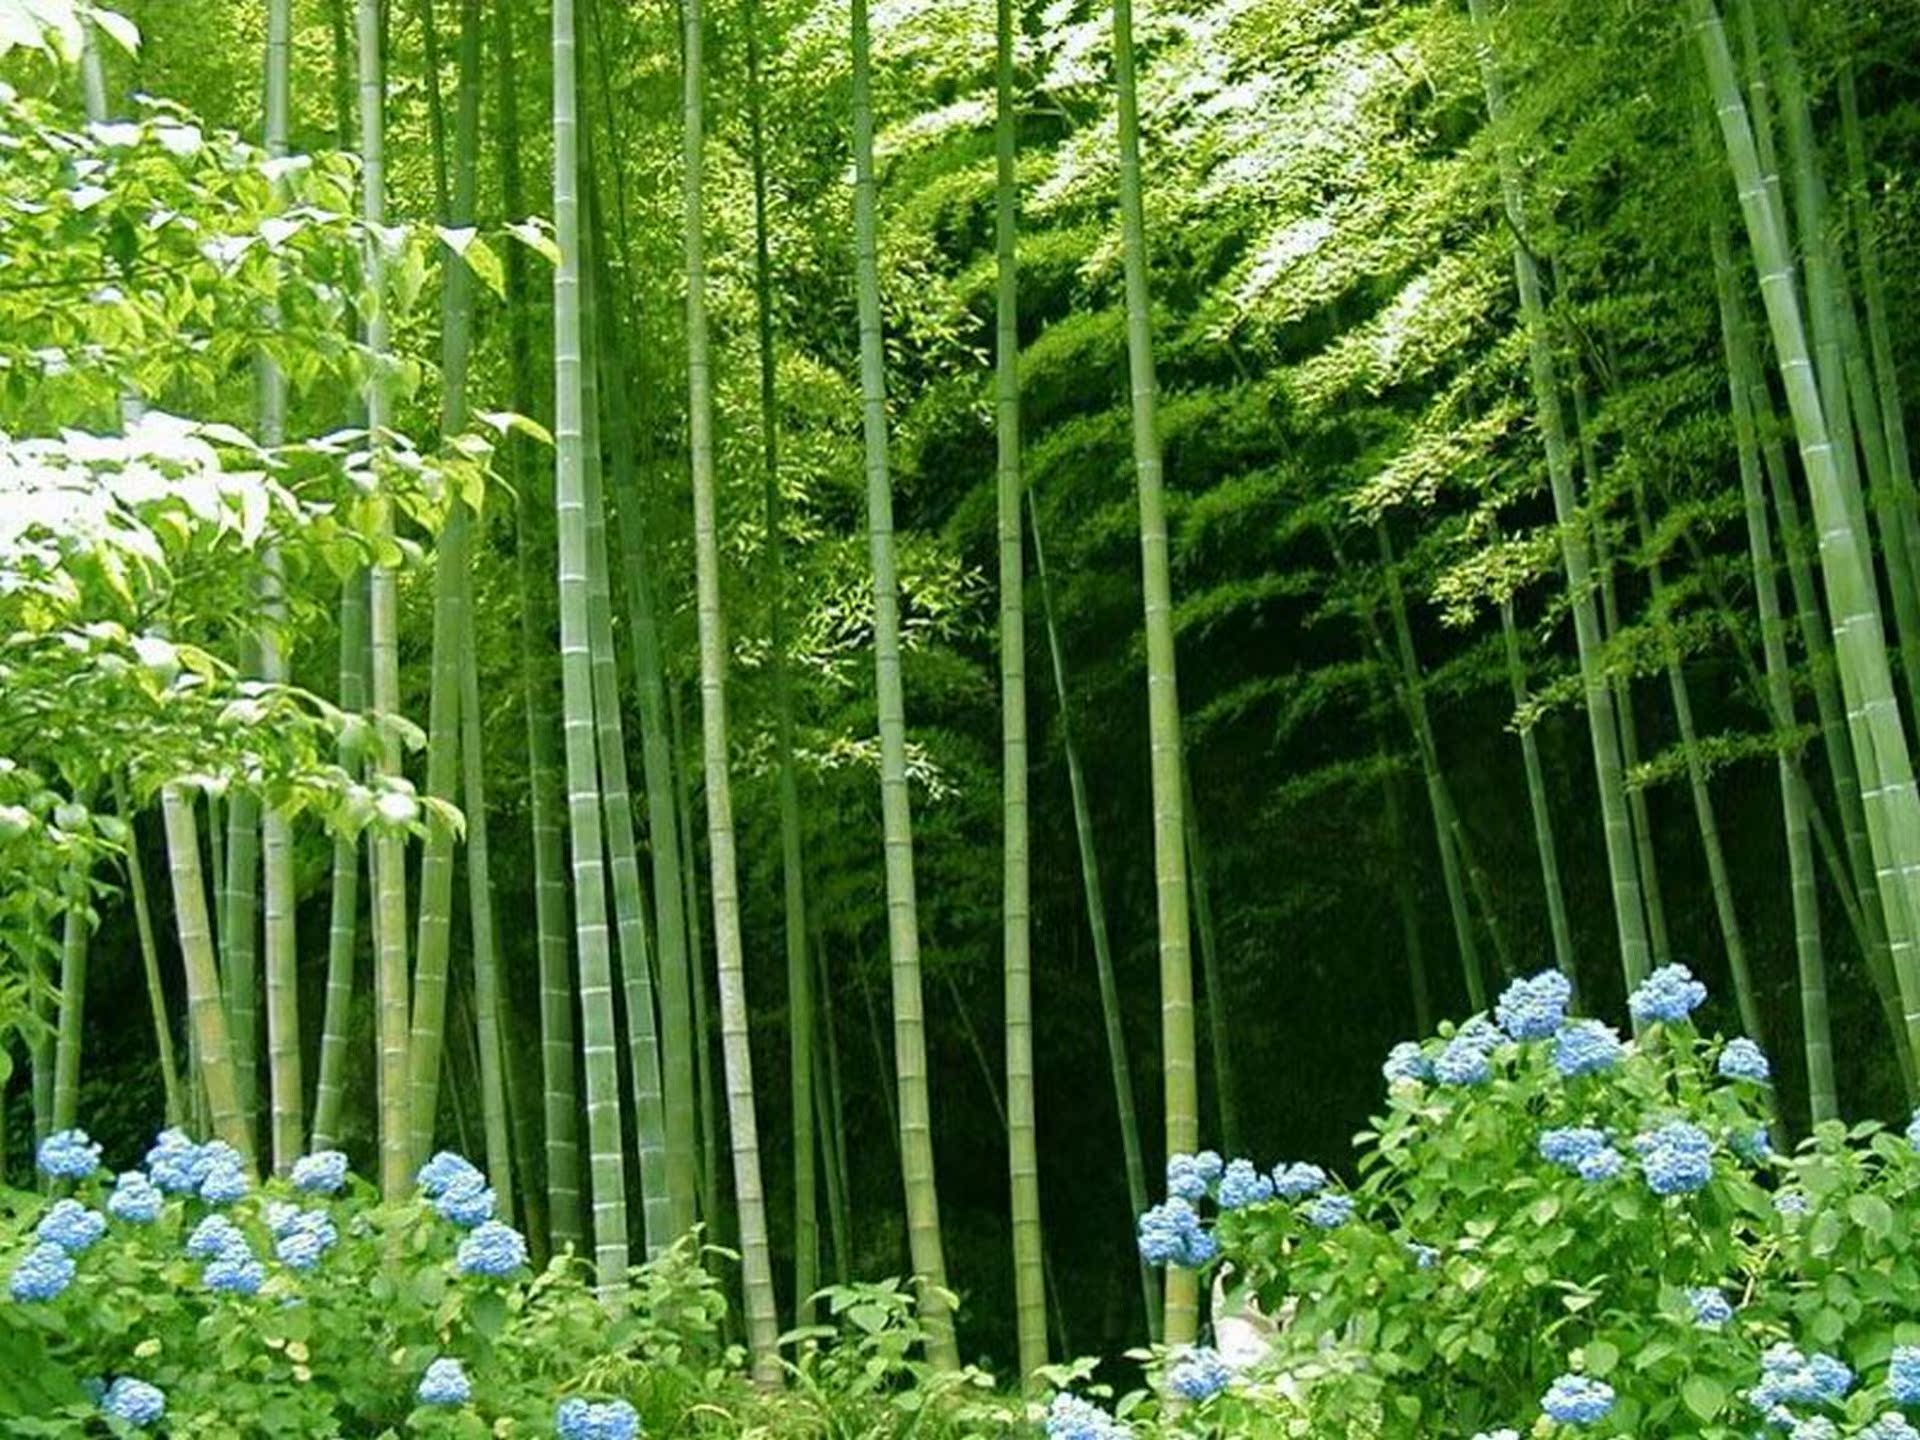 【每日好店】freya楠竹:原生态楠竹材质家居